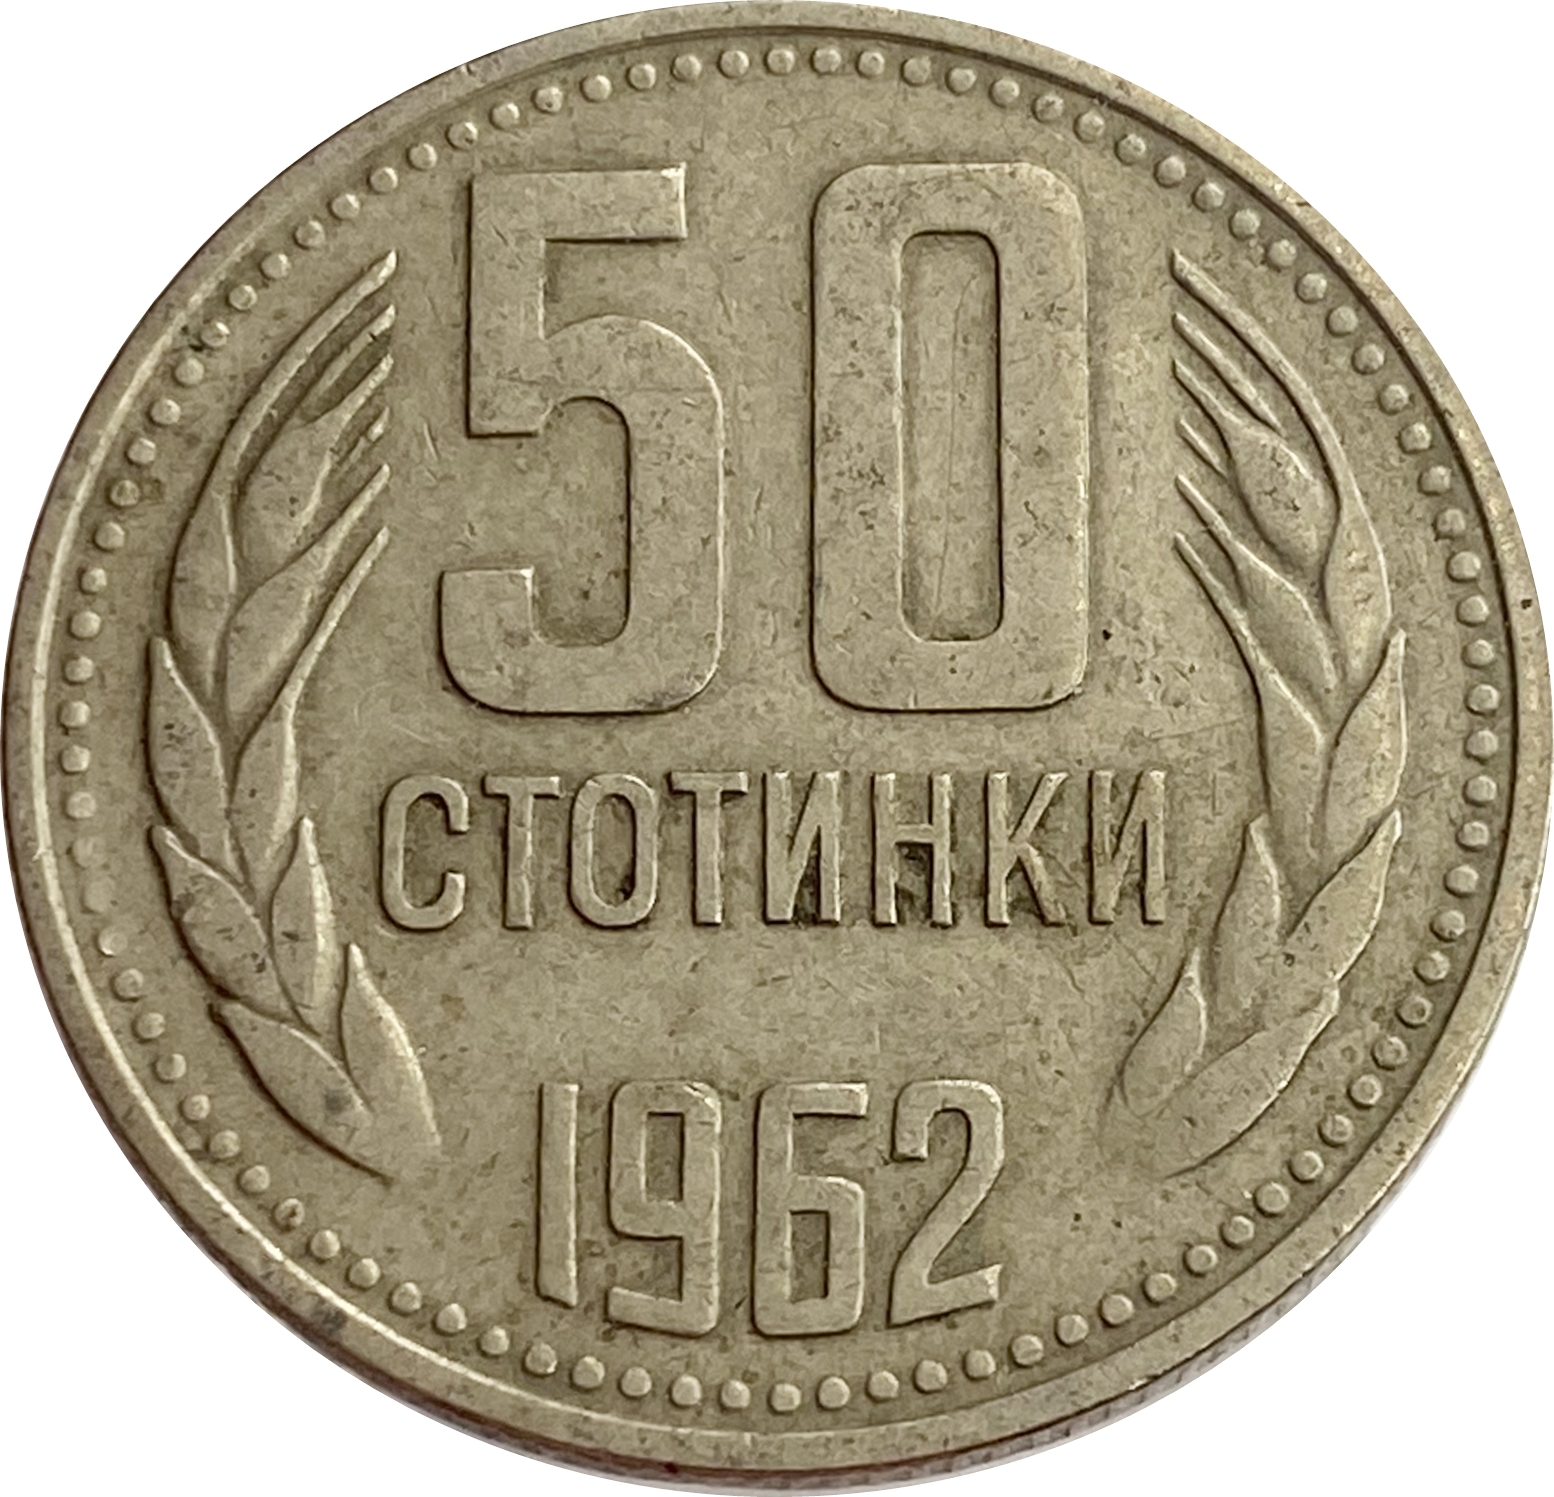 20 копеек пятьдесят лет. Монетка СССР 1961 15 копеек. 20 Копеек 1991. 20 Копеек 1991 года. 20 Копеек 1979 года VF.